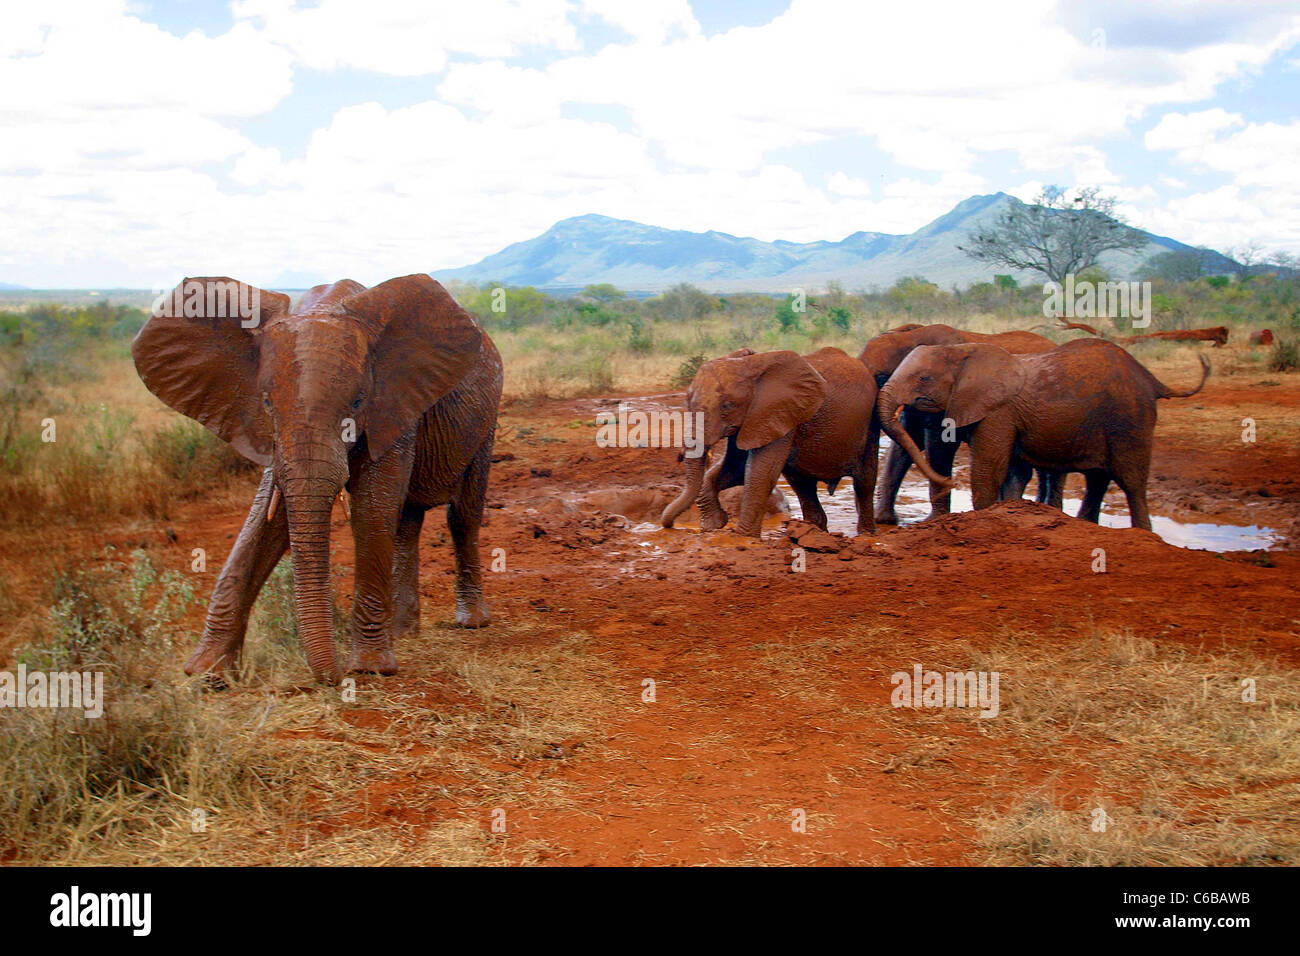 ORPHANED ELEPHANTS IN HERD RELEASED FROM SHELDRICK ORPHANAGE VOI KENYA Stock Photo